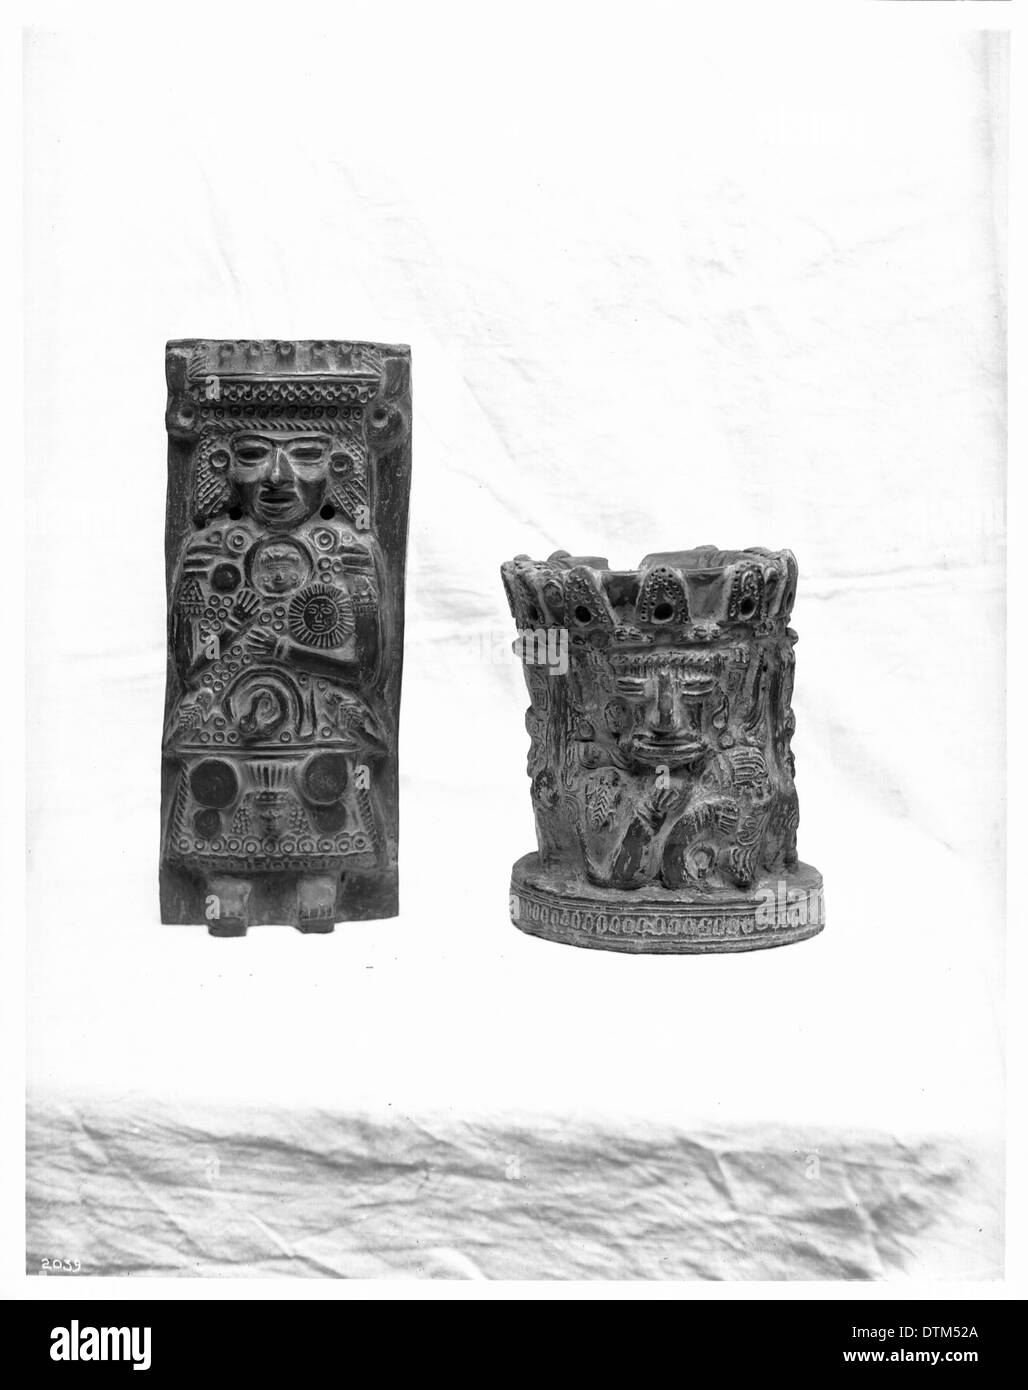 Zwei anthropomorphe Stücke der Tolteken (Azteken) Keramik aus dem Cliff Dwellers und Pueblo-Indianer von Mexiko, ca.1900 Stockfoto